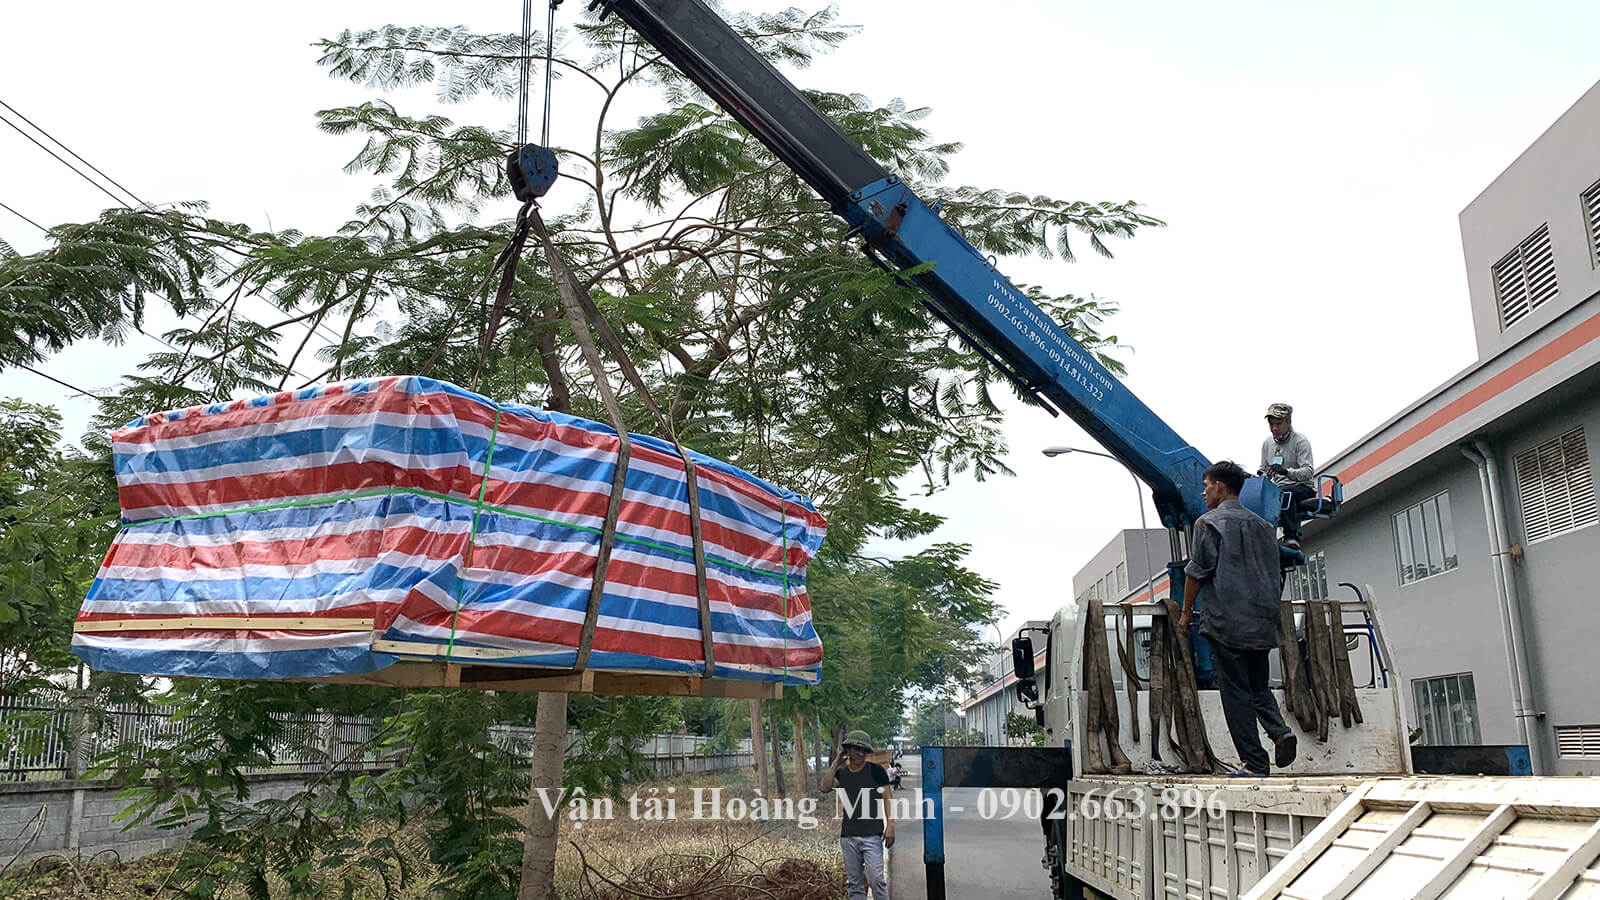 Xe cẩu chuyên dụng của Hoàng Minh cẩu hàng hoá tại Tây Ninh.jpg